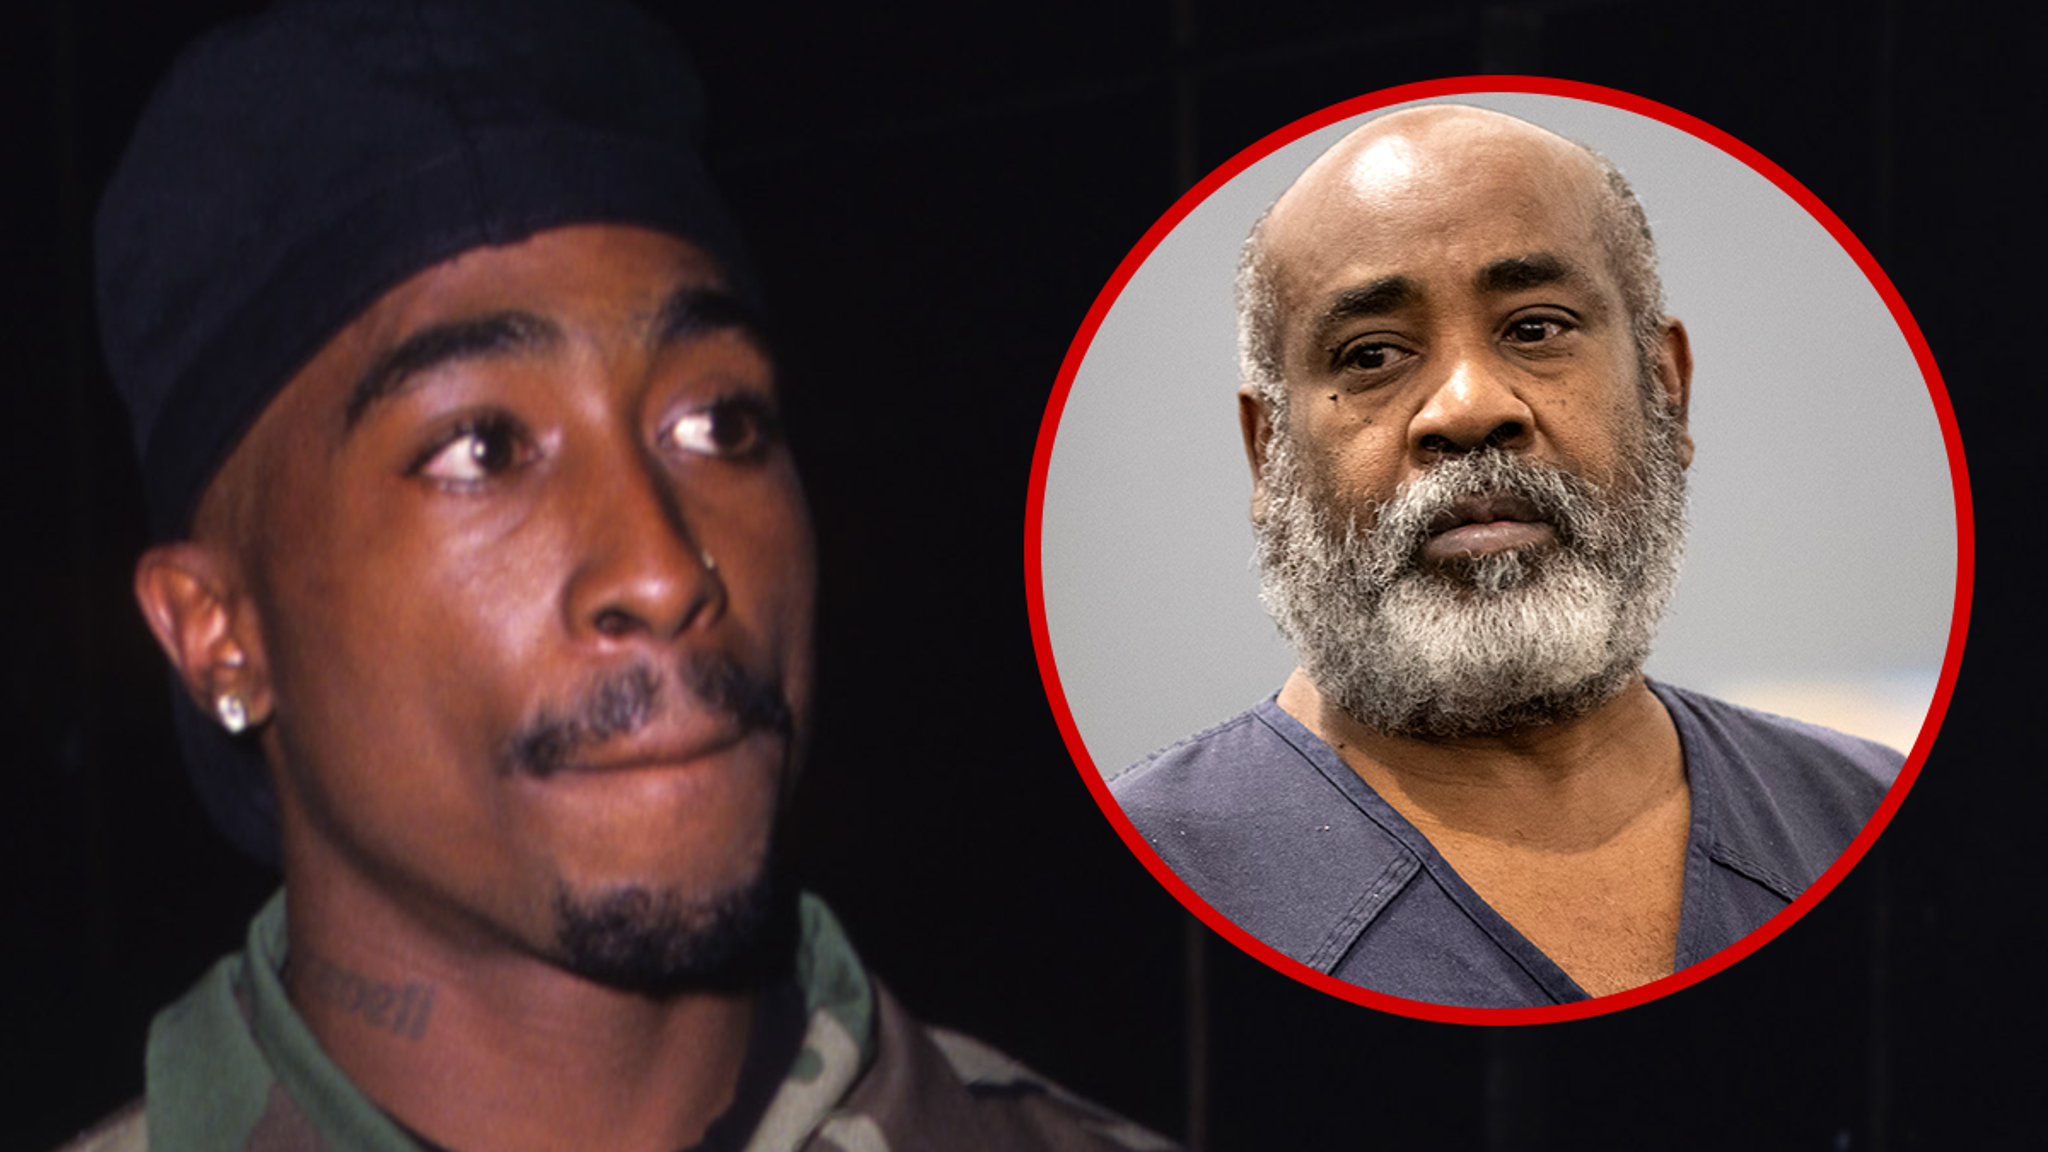 Le tueur présumé de Tupac, Keefe D, est trop dangereux pour une libération sous caution, selon les procureurs